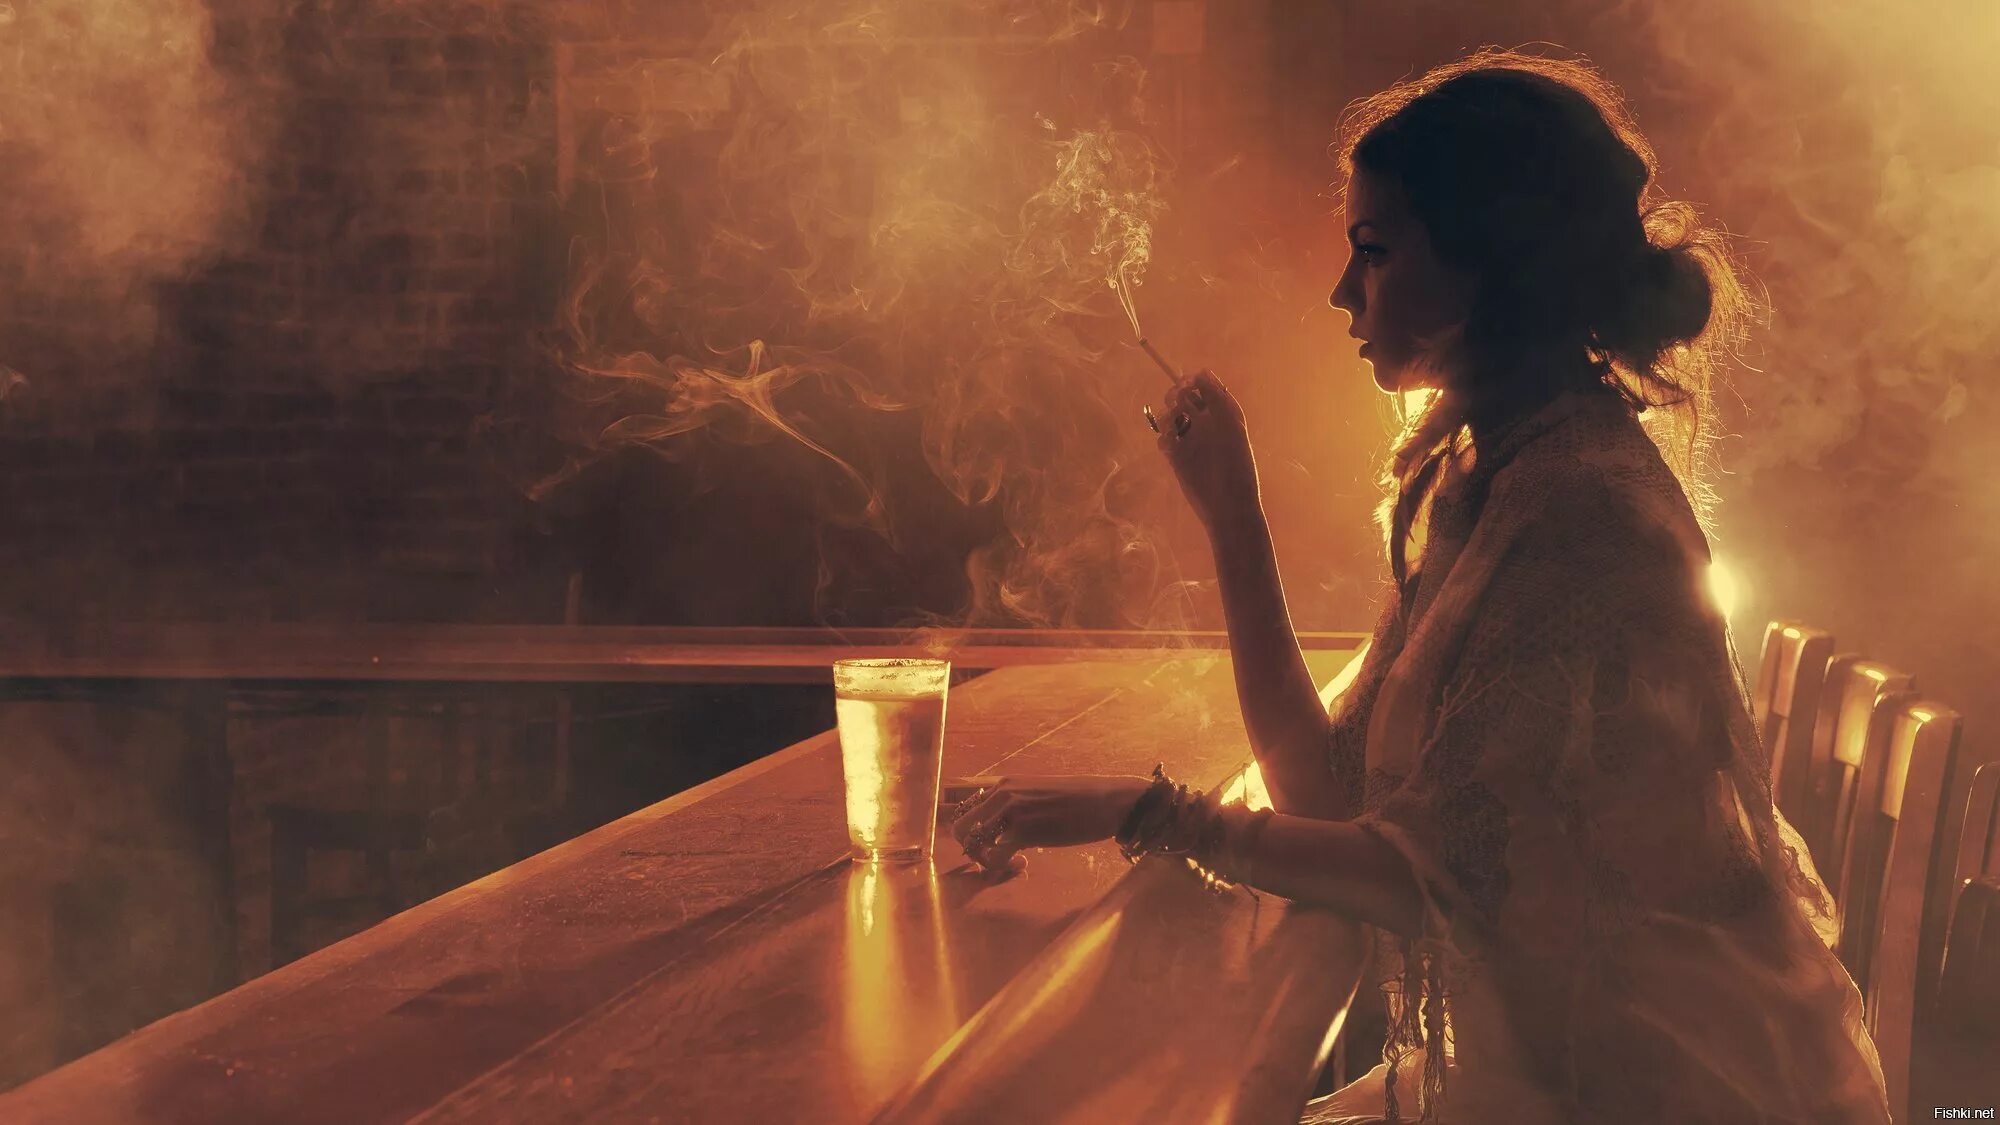 Мэнди Юргенс (Mandy Jurgens). Девушка с сигаретой арт. Курящая девушка арт. Девушки с дымом сигарет. А ночь послевкусие любви